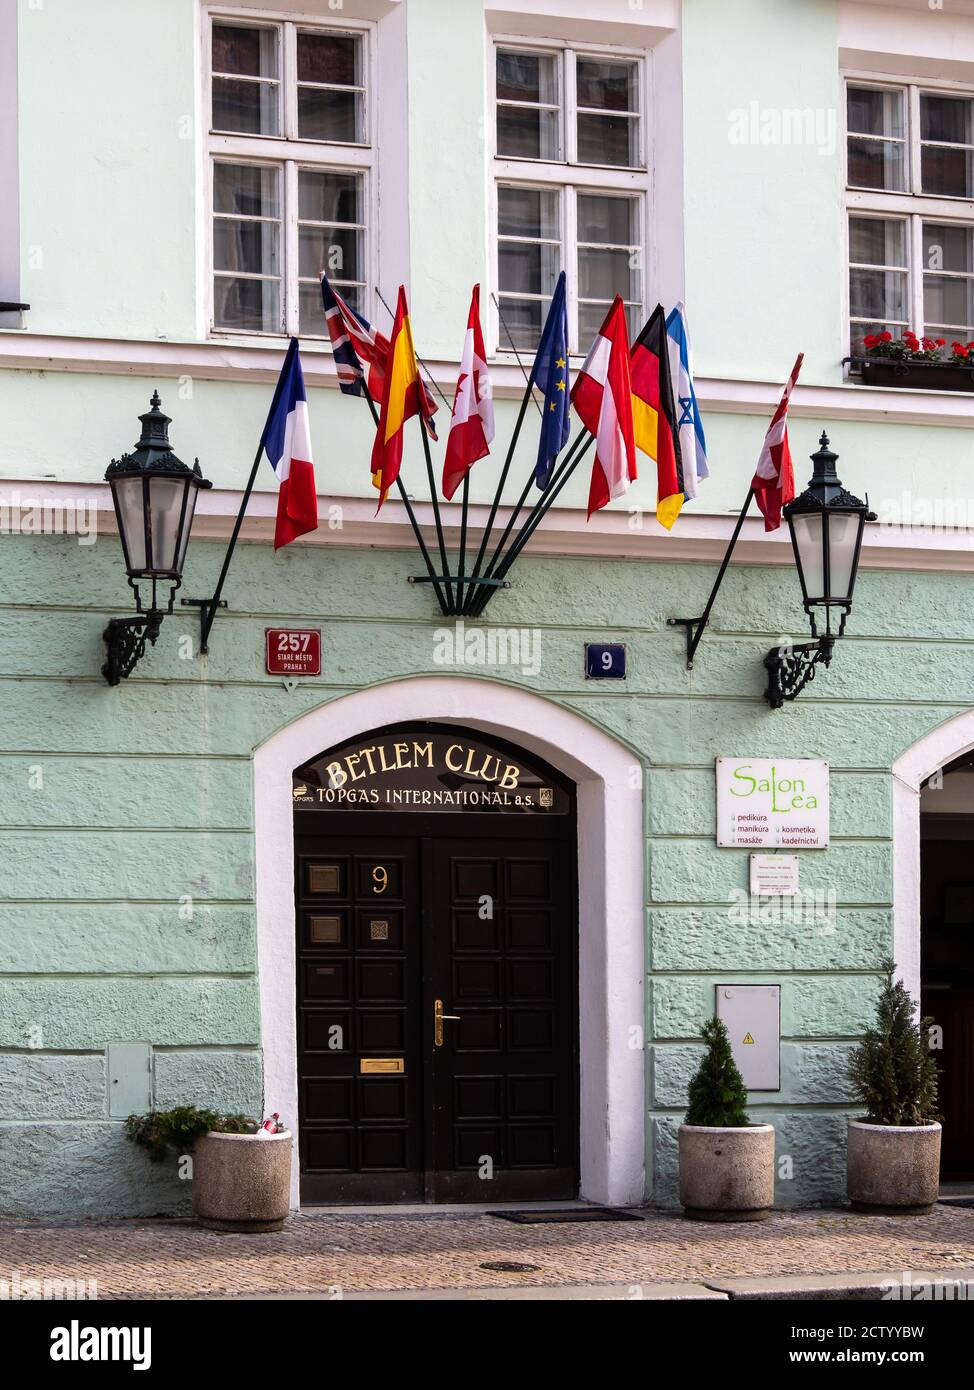 PRAG, TSCHECHISCHE REPUBLIK: Eingang zum Betlem Club Boutique Hotel Stockfoto